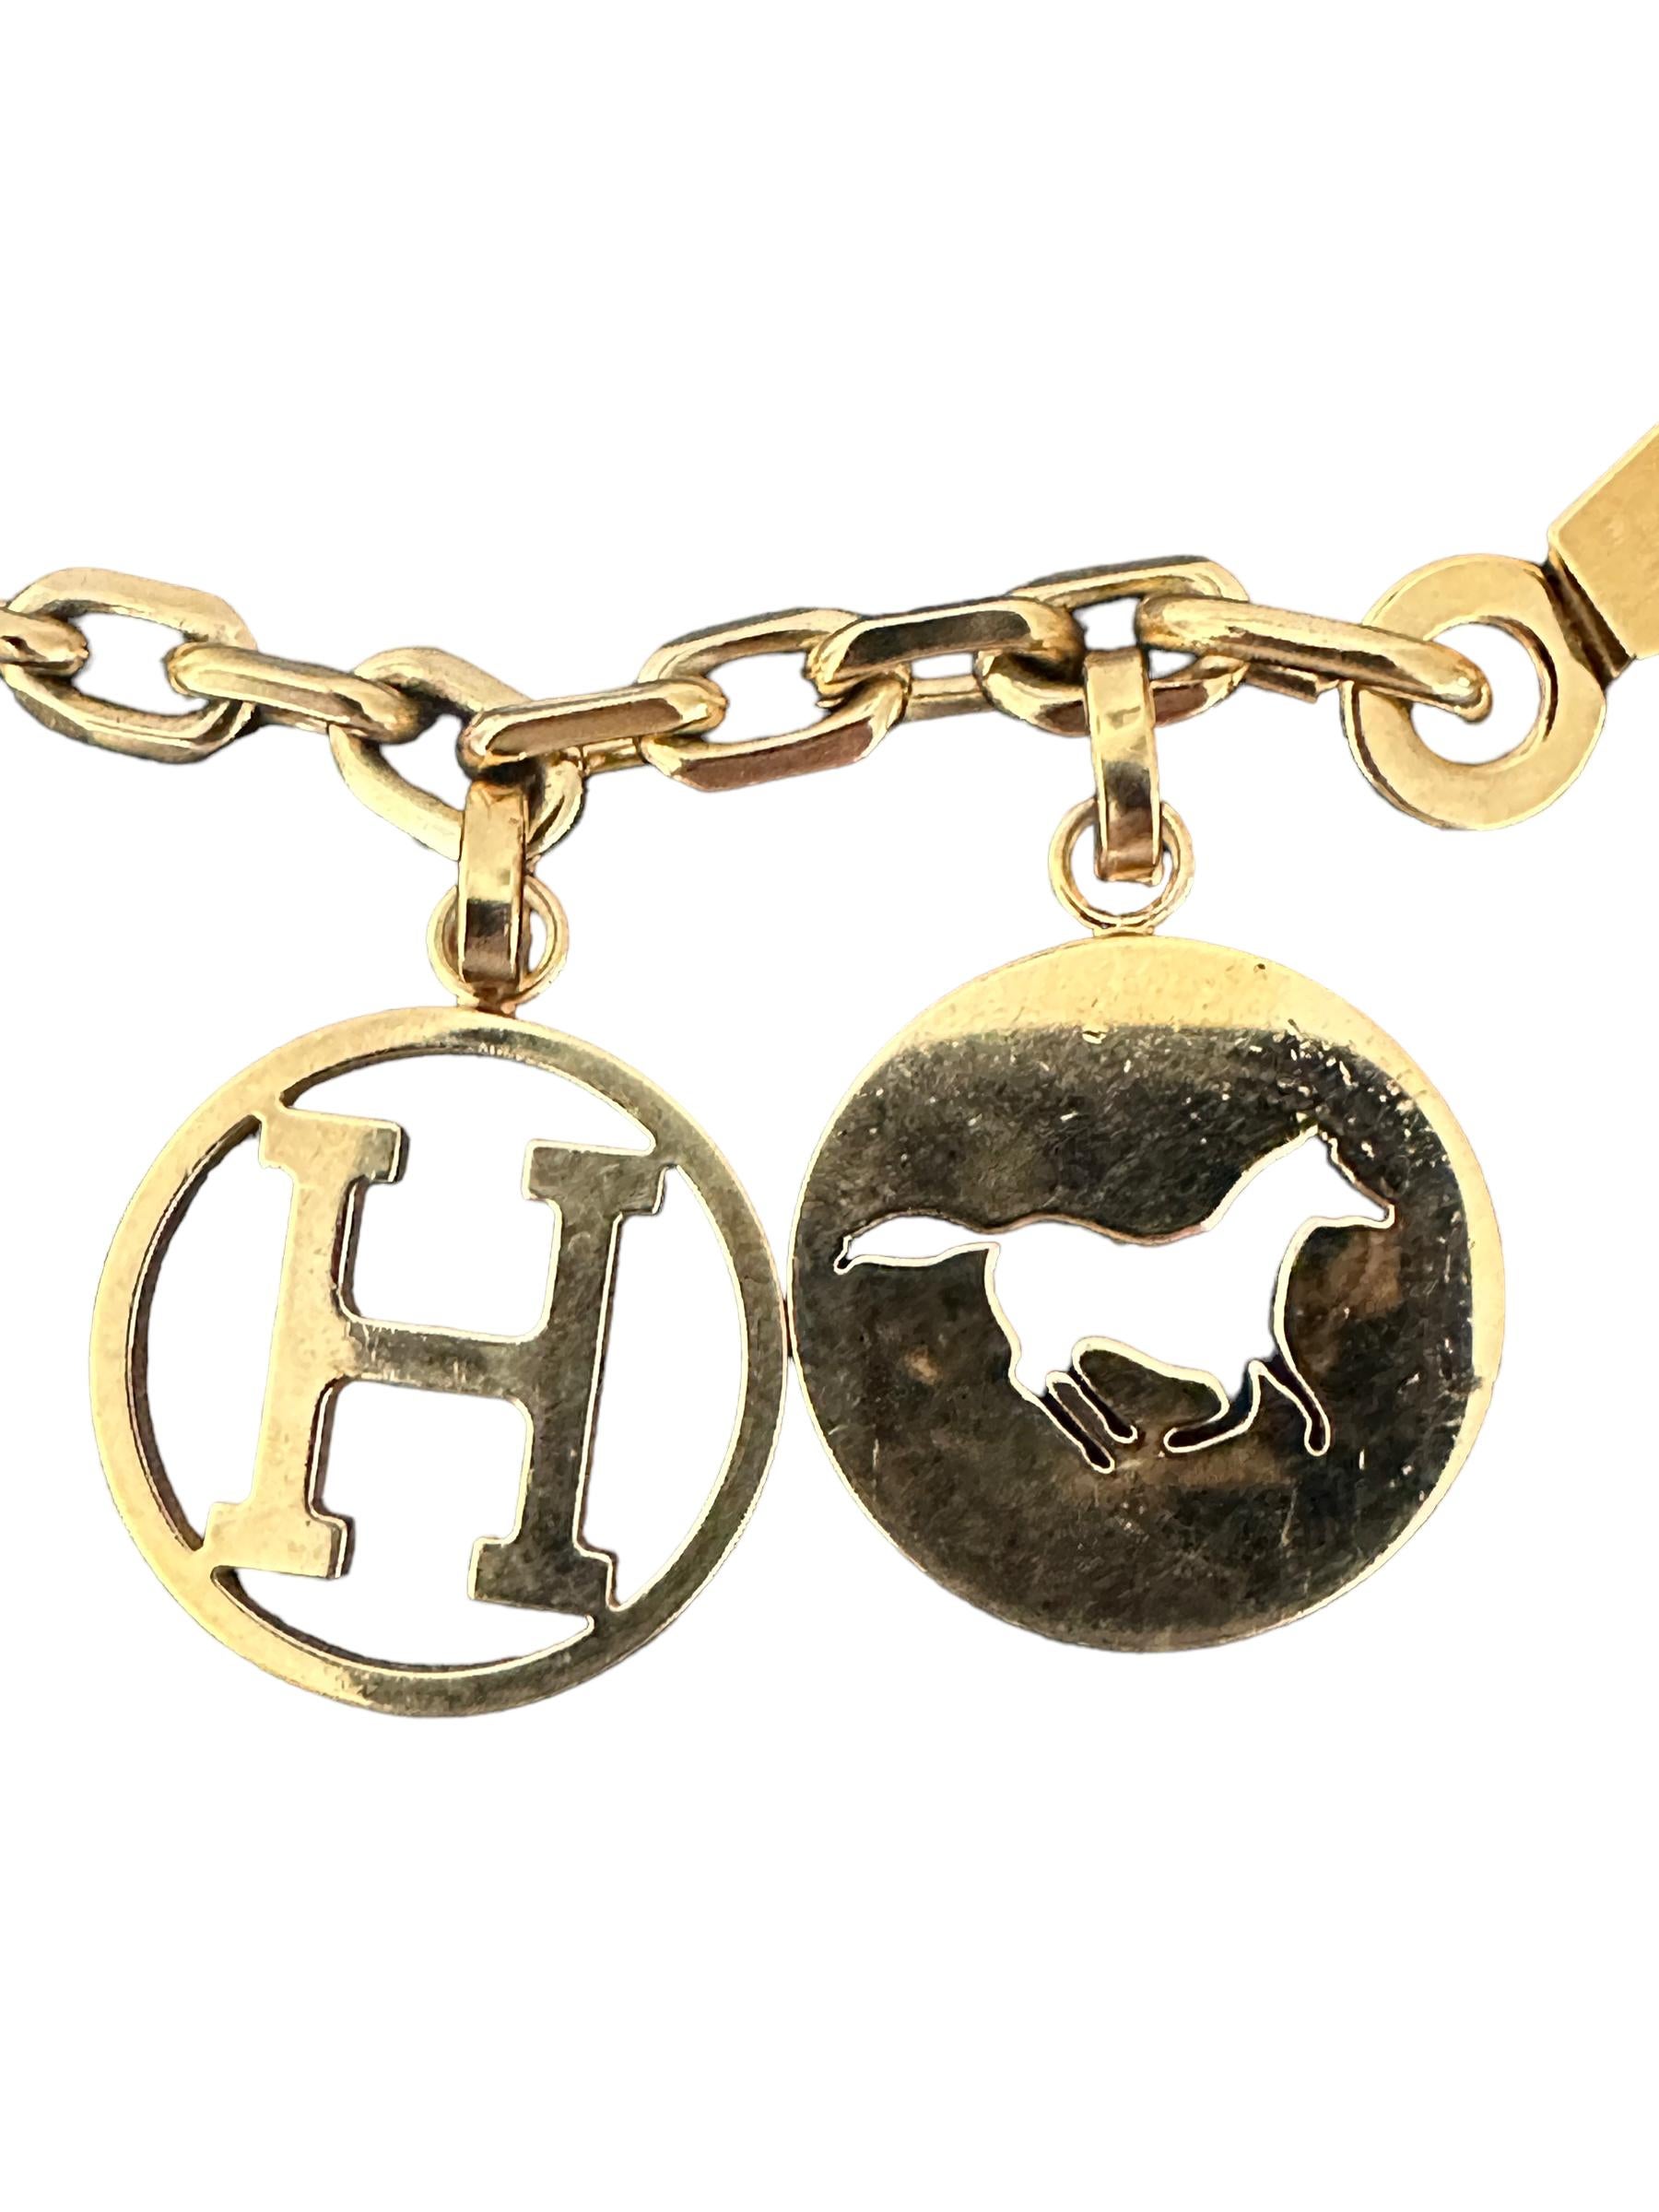 Hermes Gold Breloque Dog Horse H  Breloque de sac pour Birkin ou Kelly

Breloque de sac en argent de la marque Hermès, dont la production est interrompue depuis longtemps.
S'adapte parfaitement à votre Kelly ou Birkin
Faites ressortir votre sac